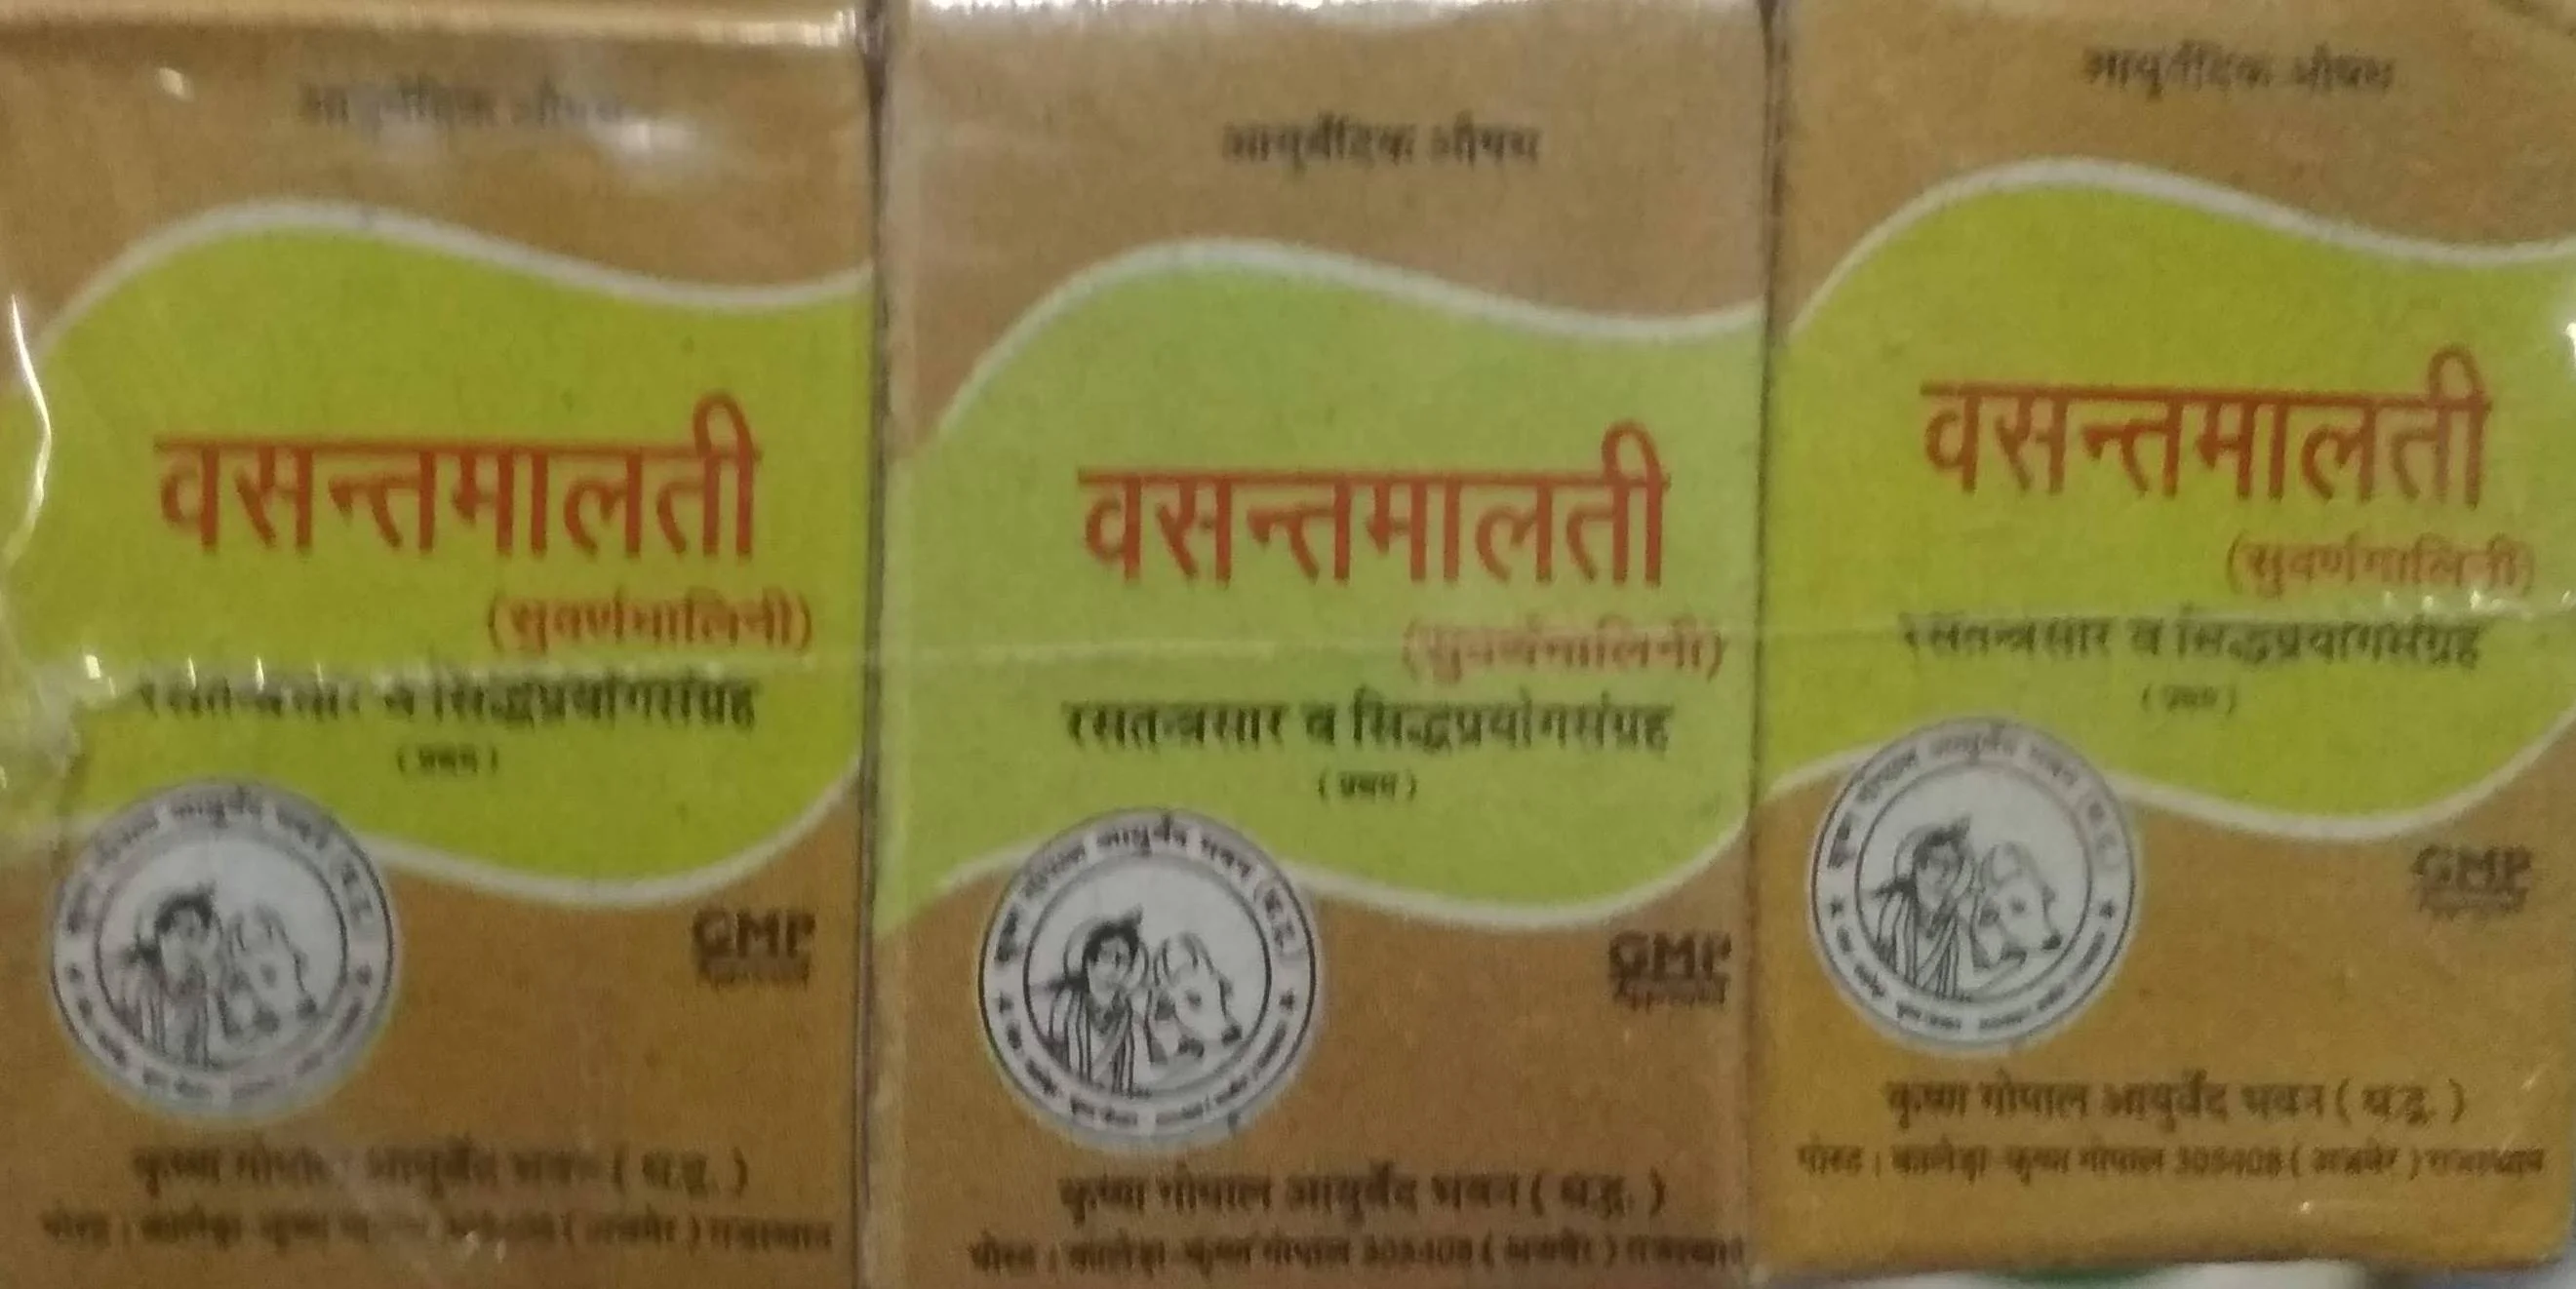 Vasant malati ras swarna yukt 1 gm upto 20% off Krishna Gopal Ayurved bhavan